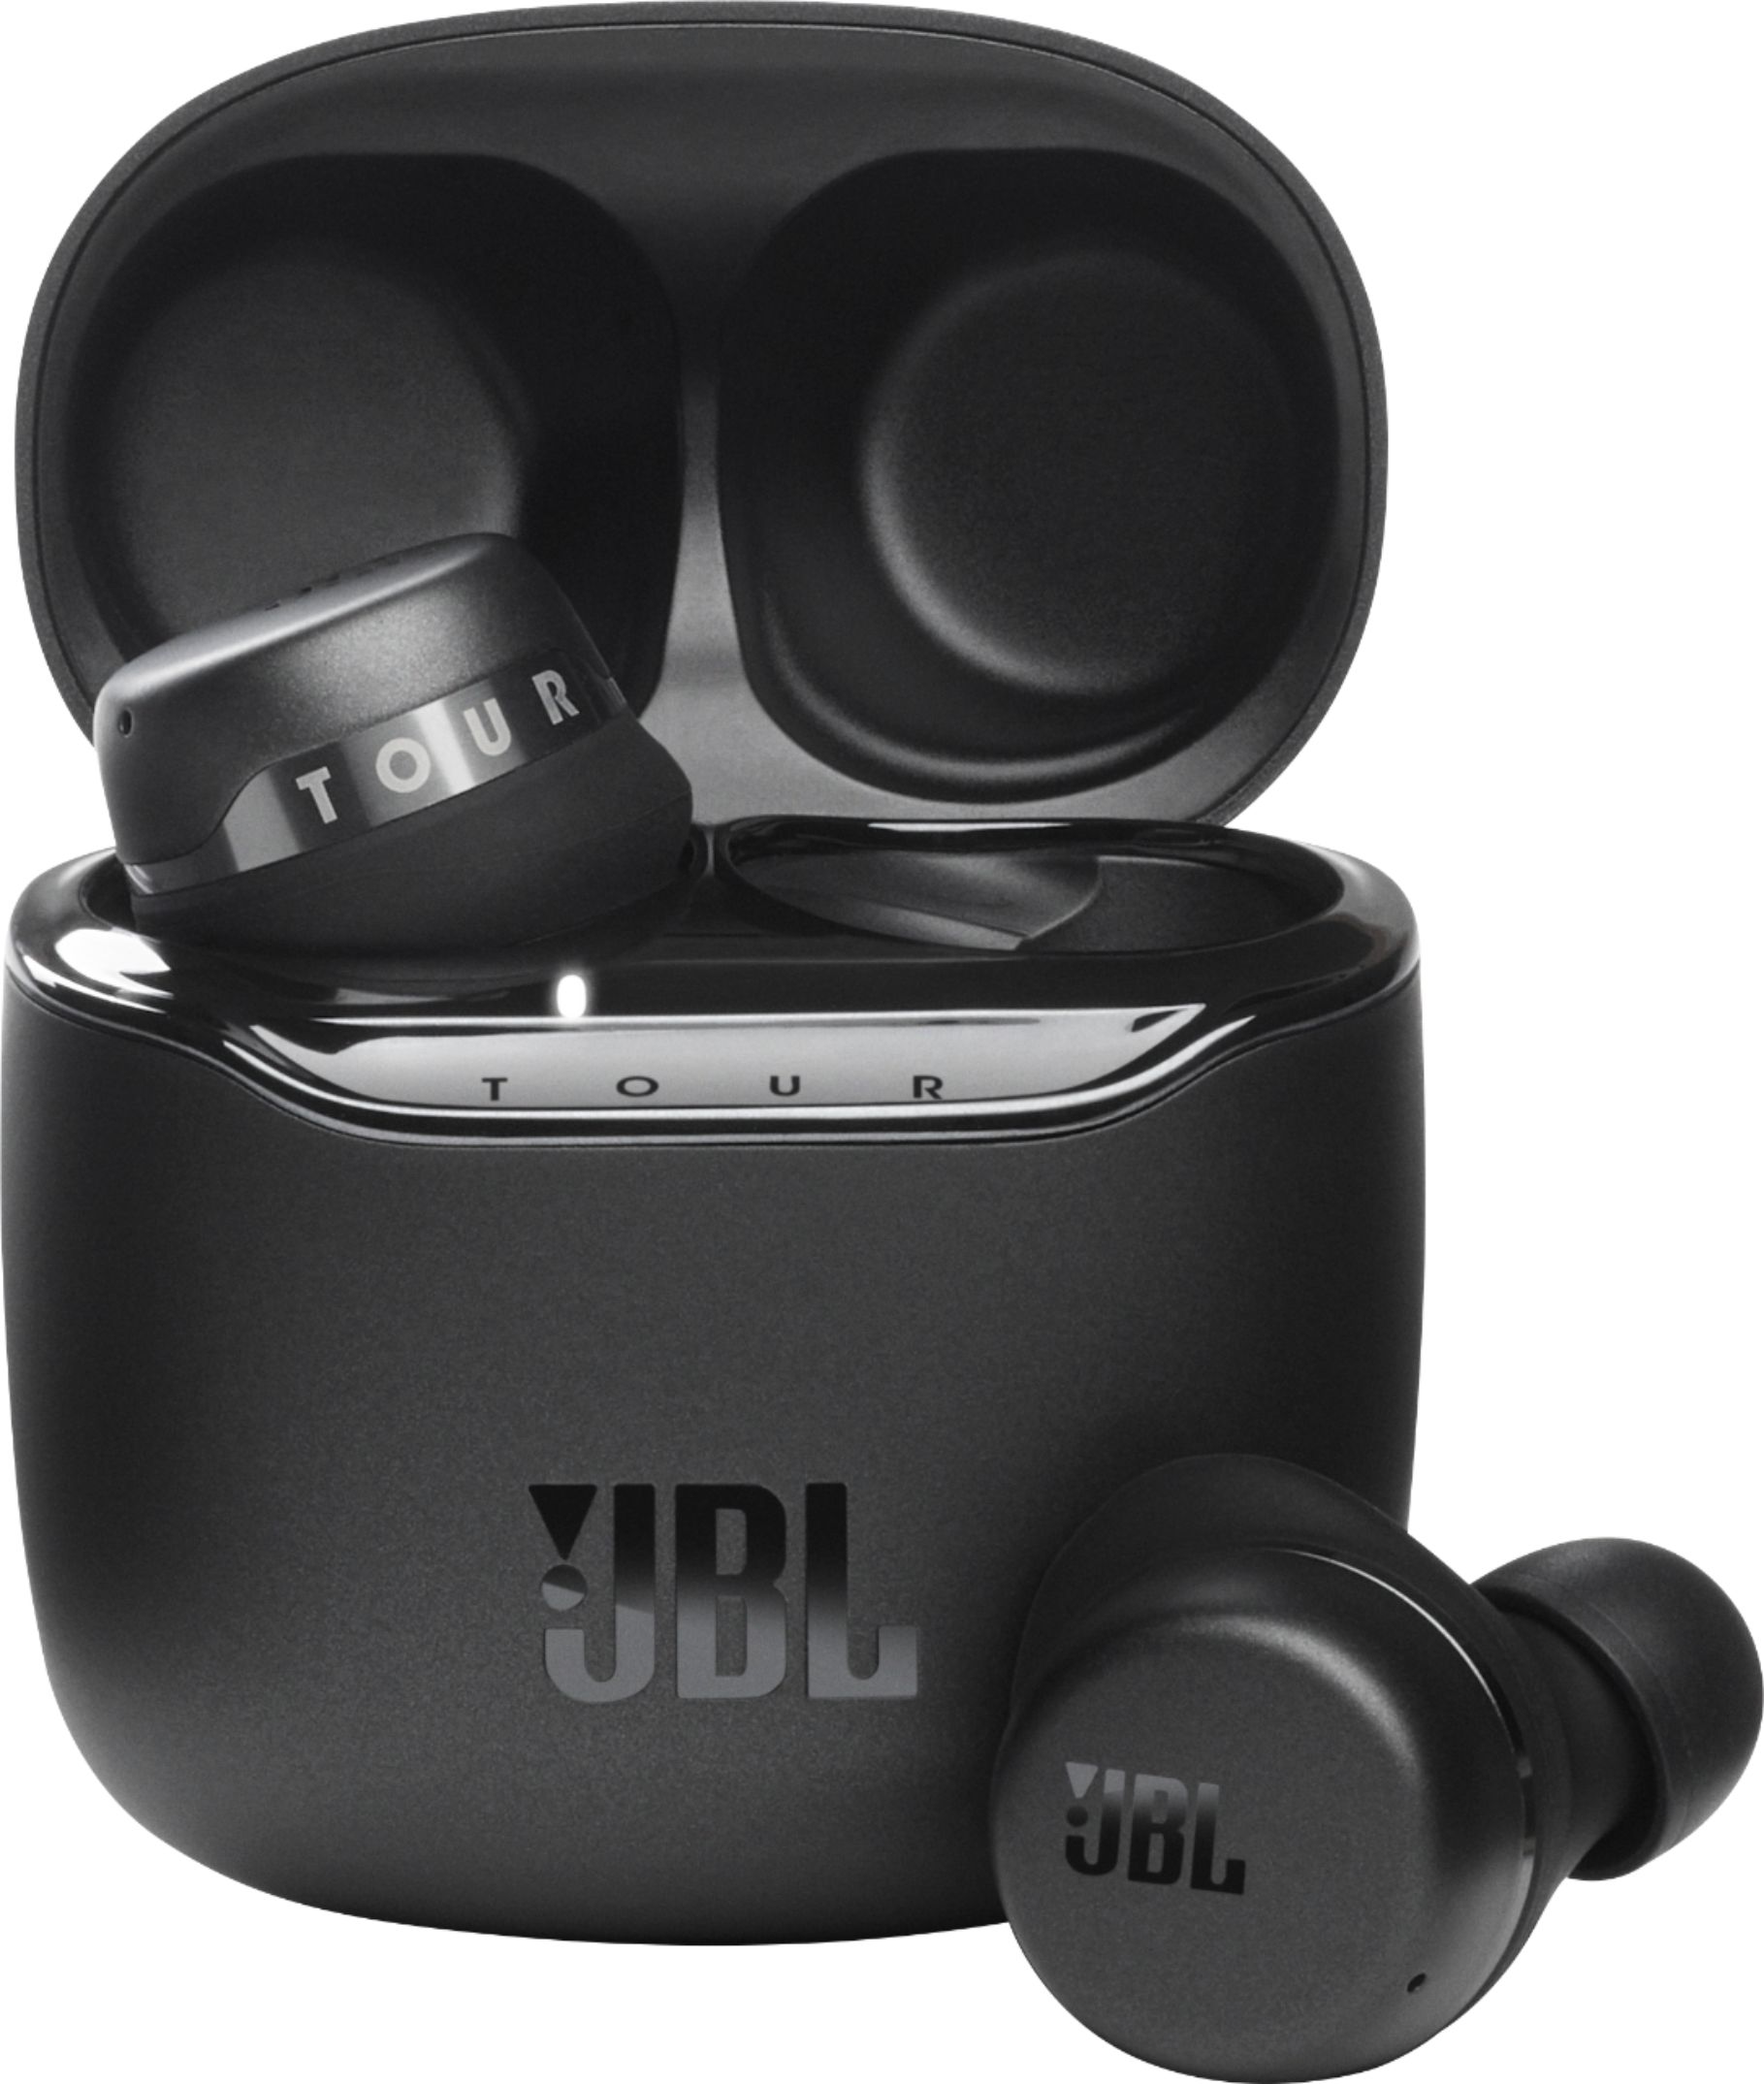 JBL Tour Pro Plus True Wireless Noise Cancelling Headphones Black